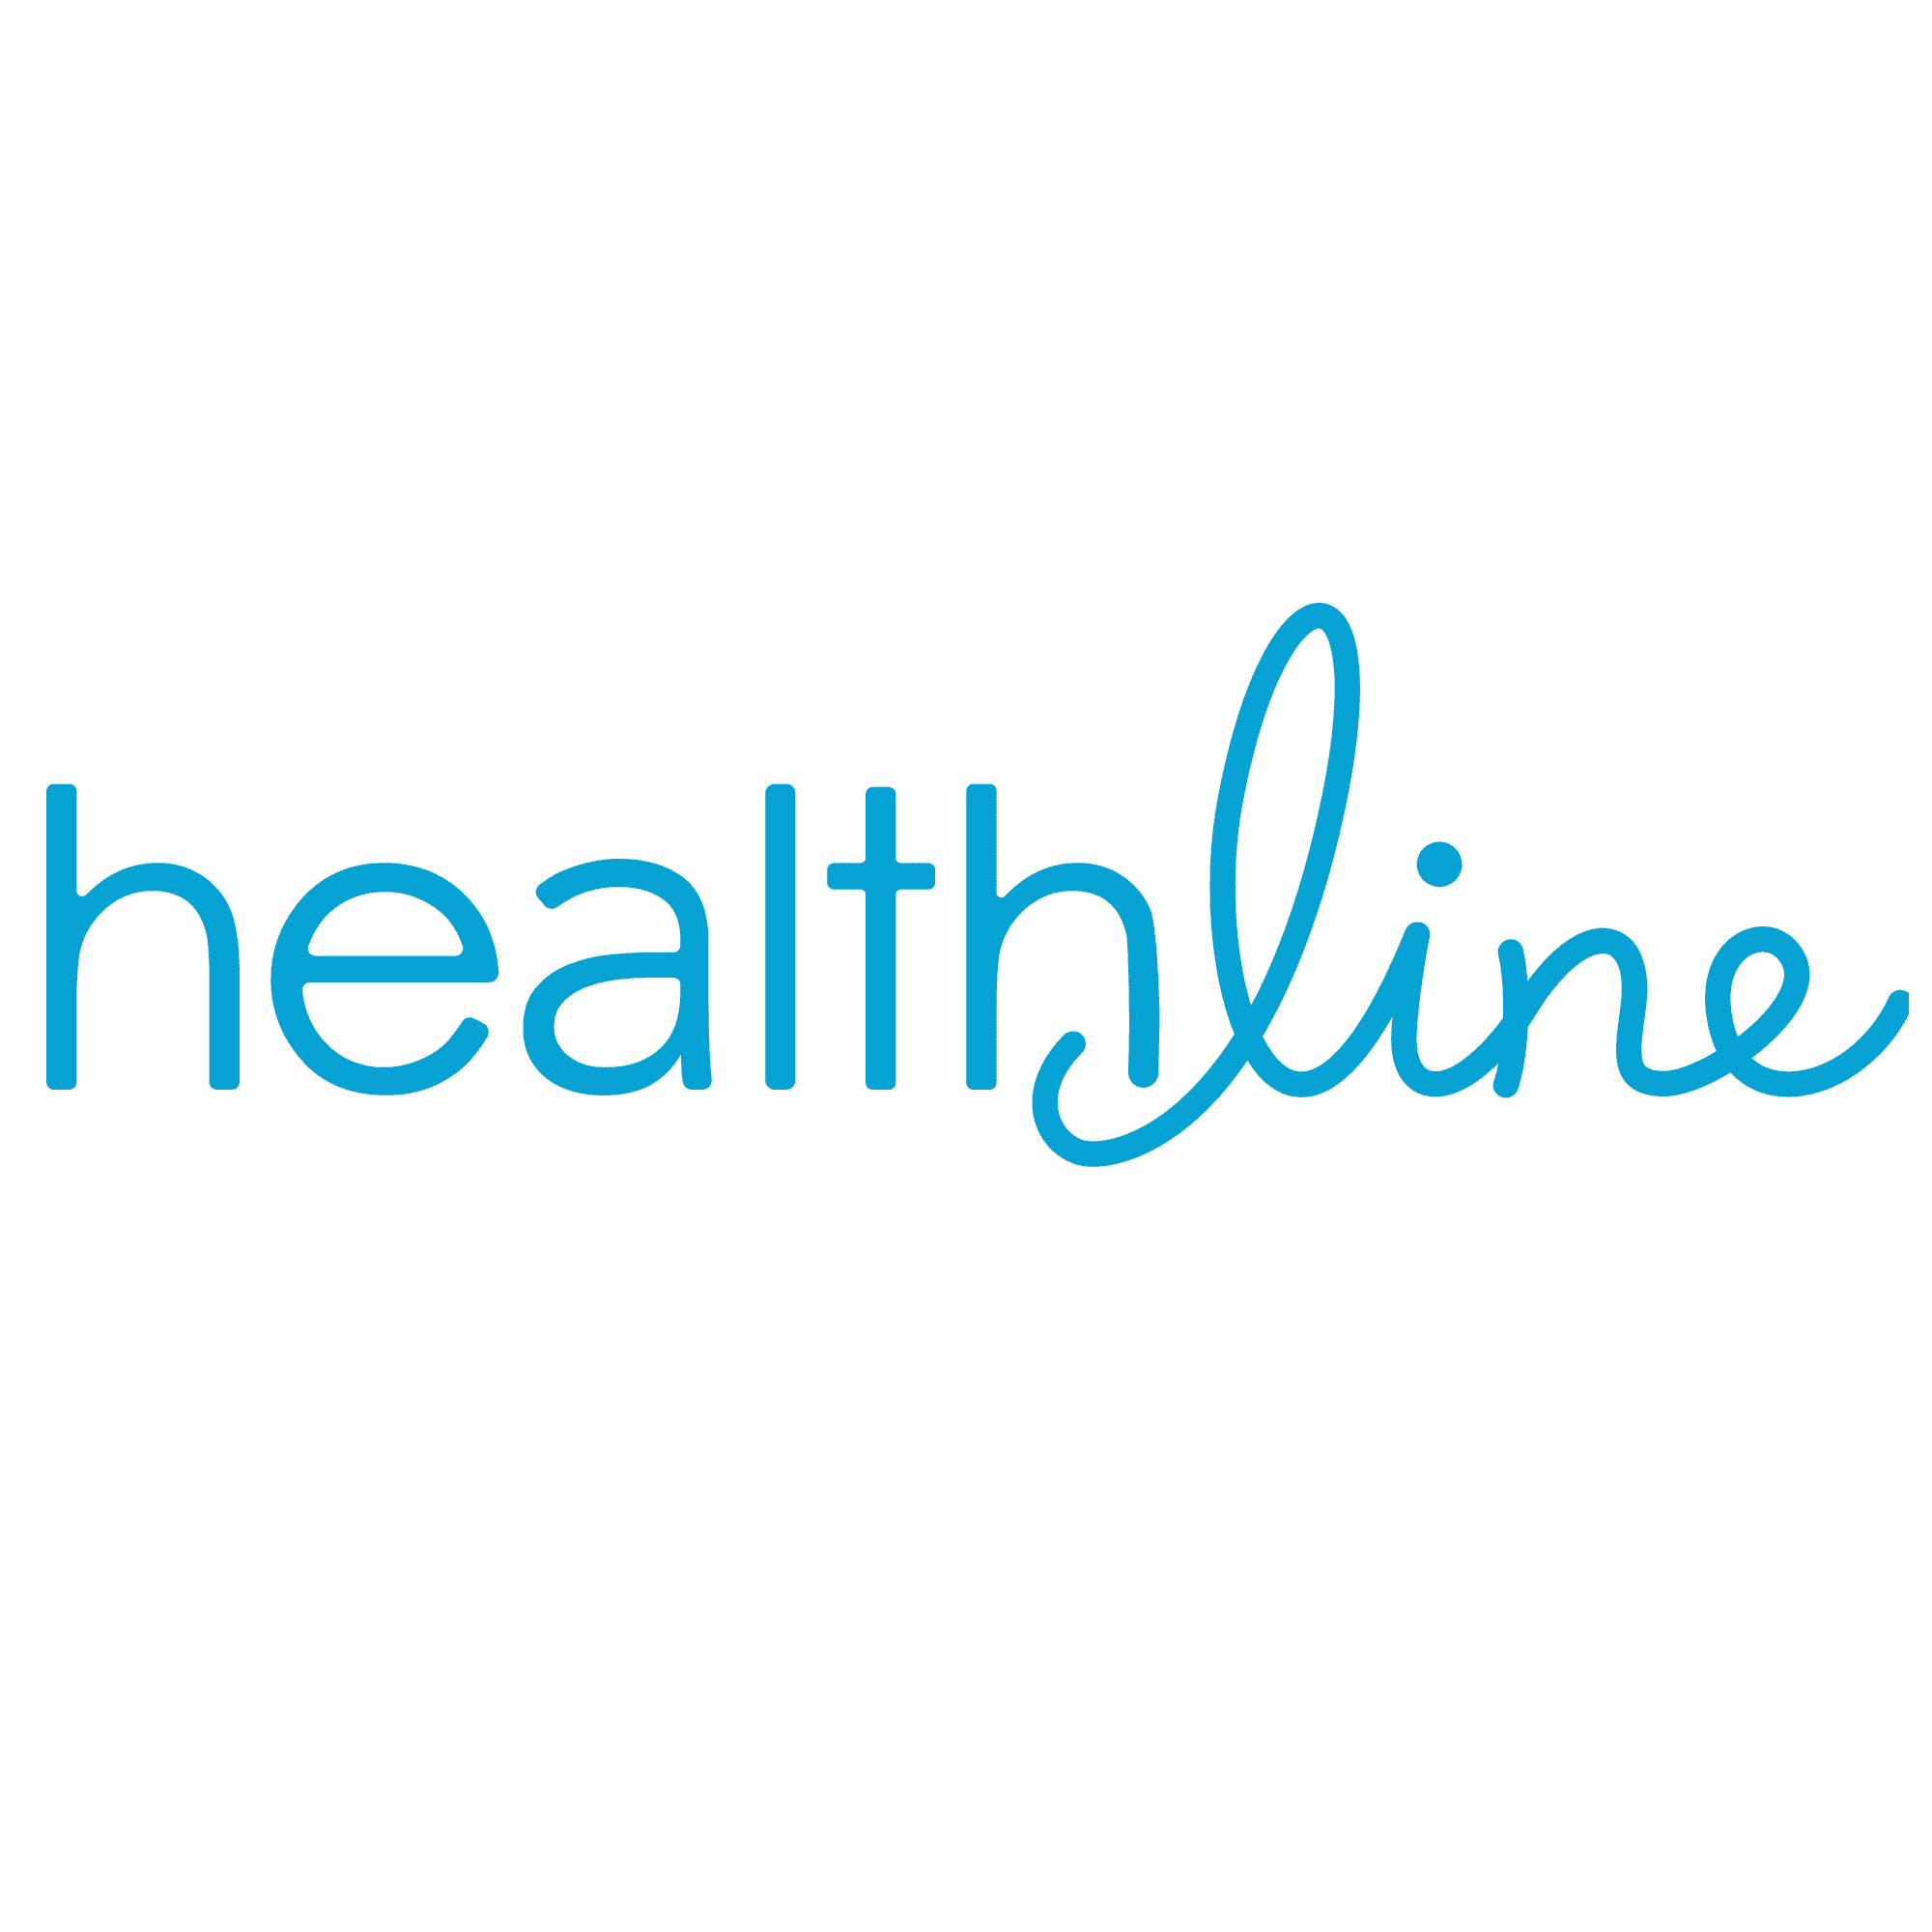 healthline-logo